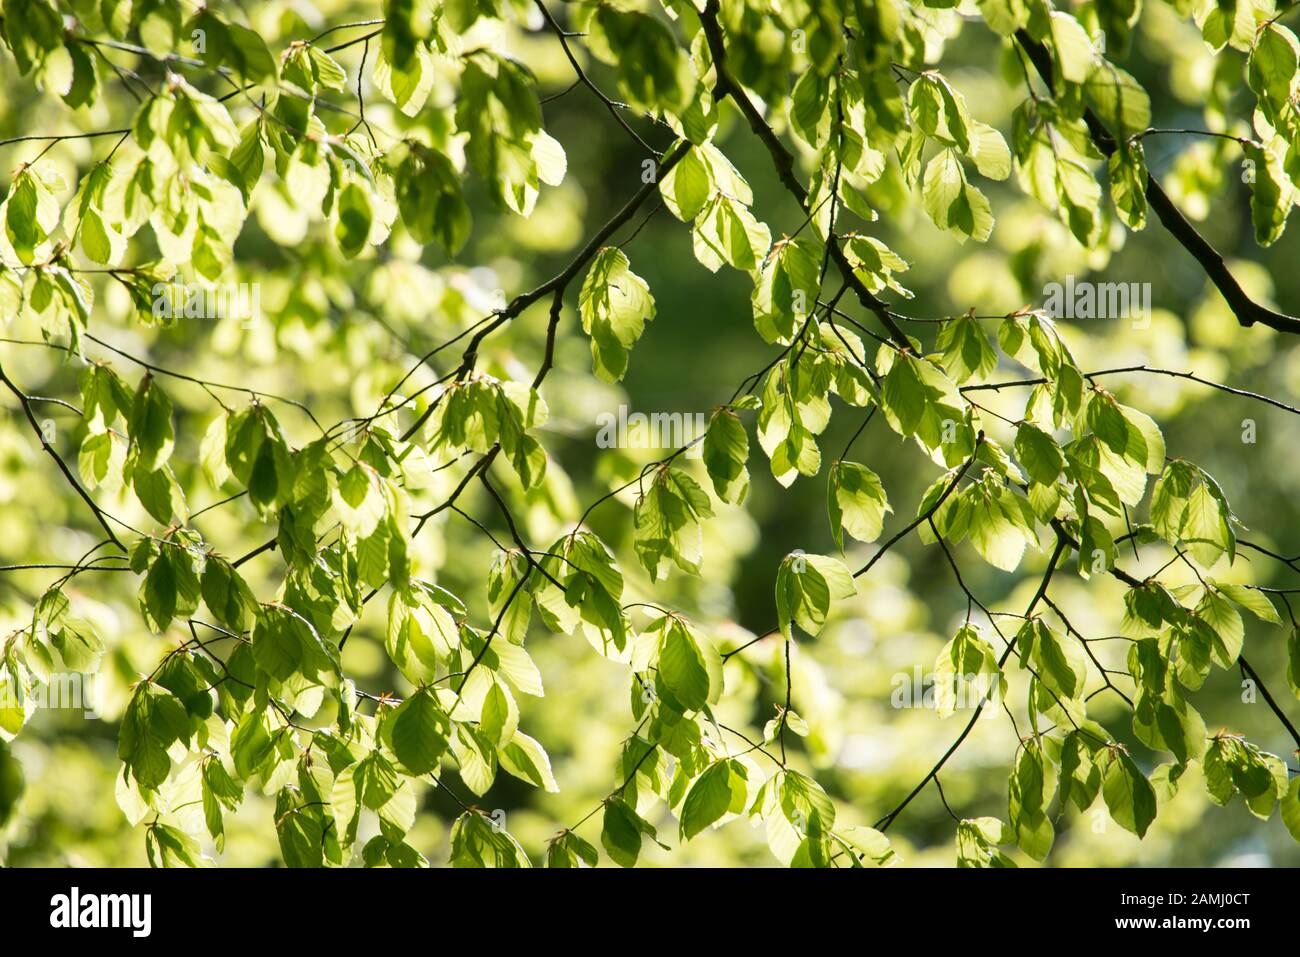 Detalle de las hojas de un árbol de haya en primavera con hojas verdes frescas Foto de stock